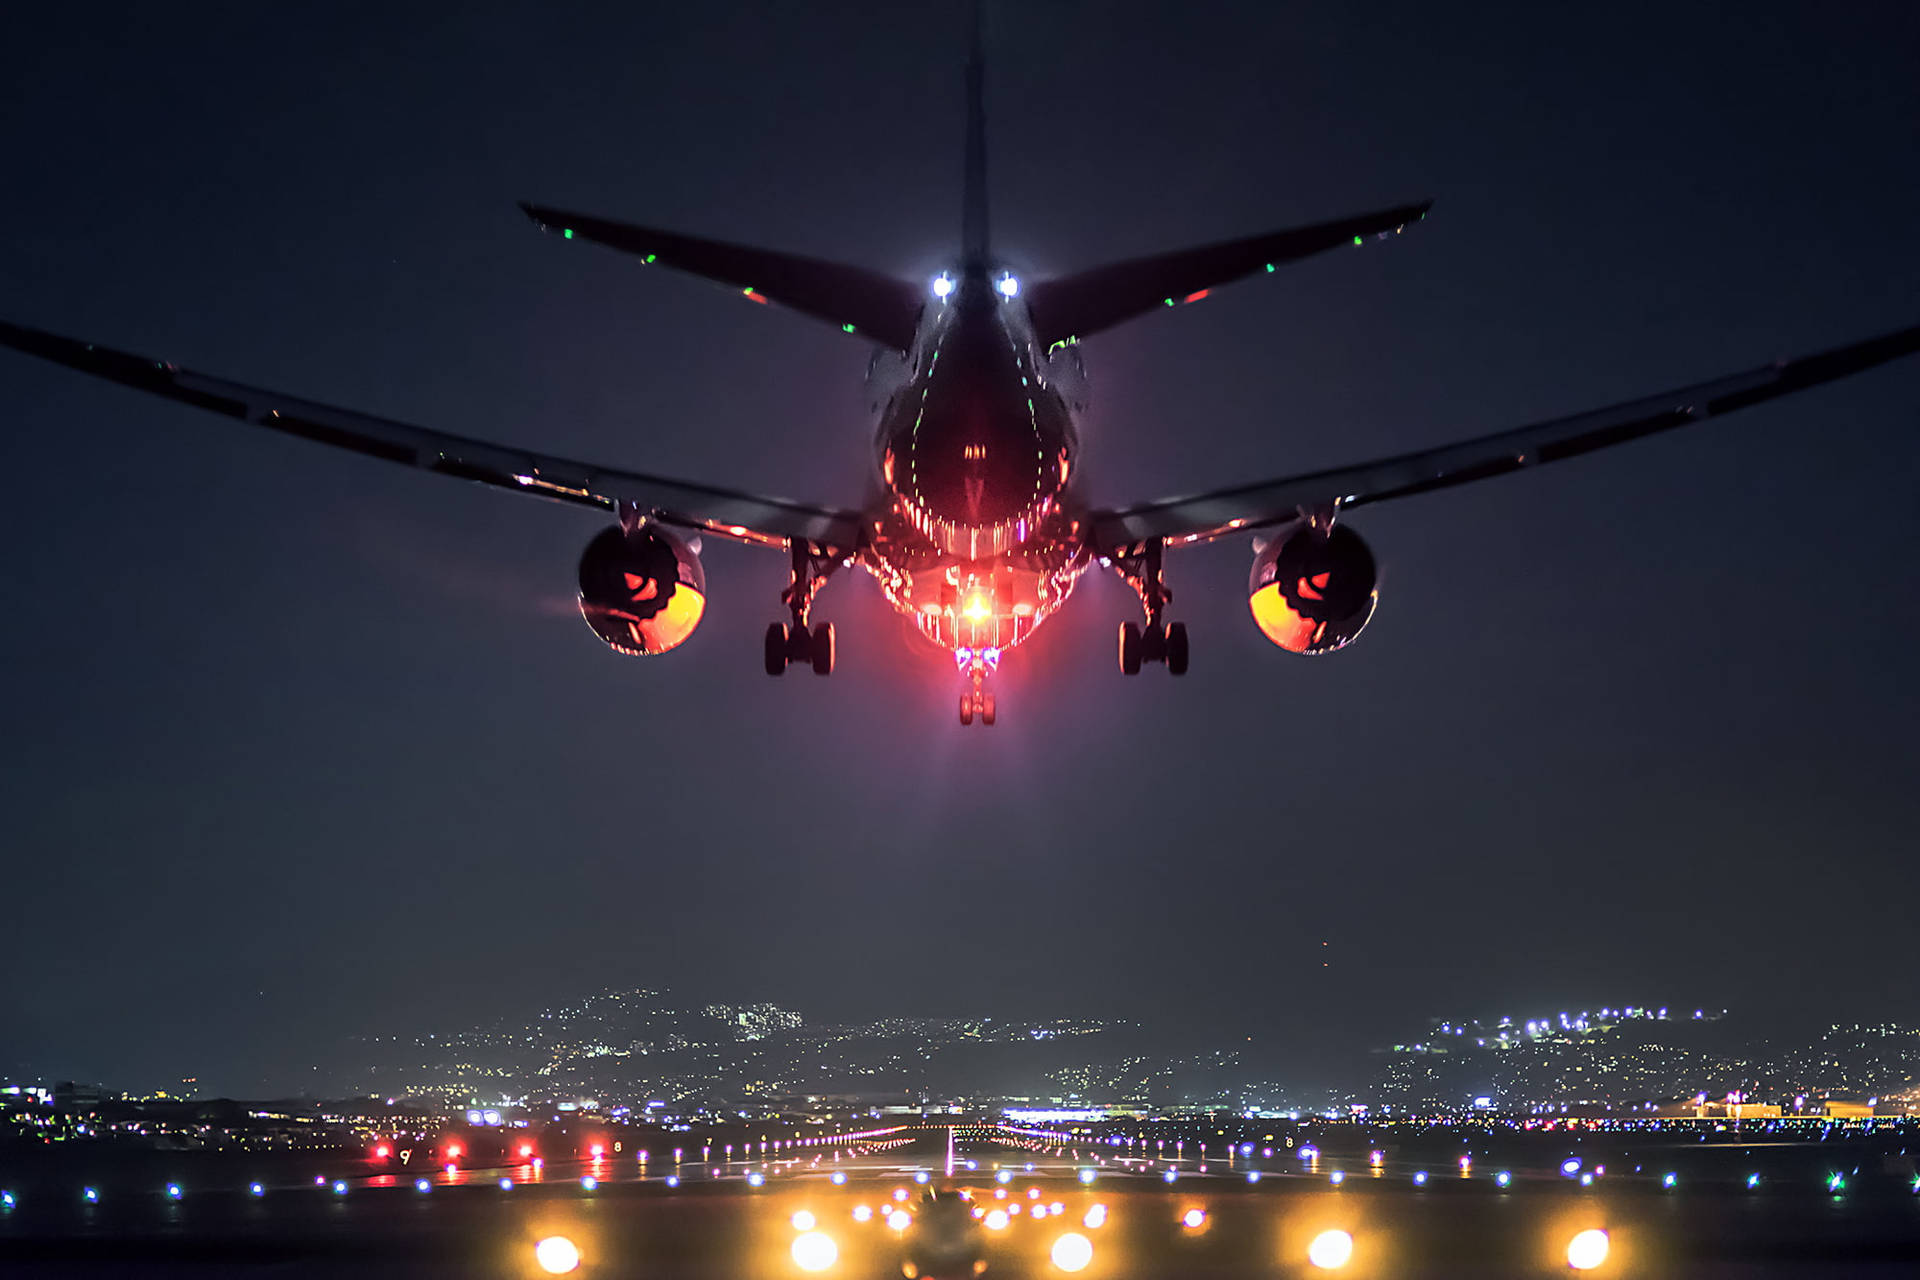 Hd Plane Landing At Night